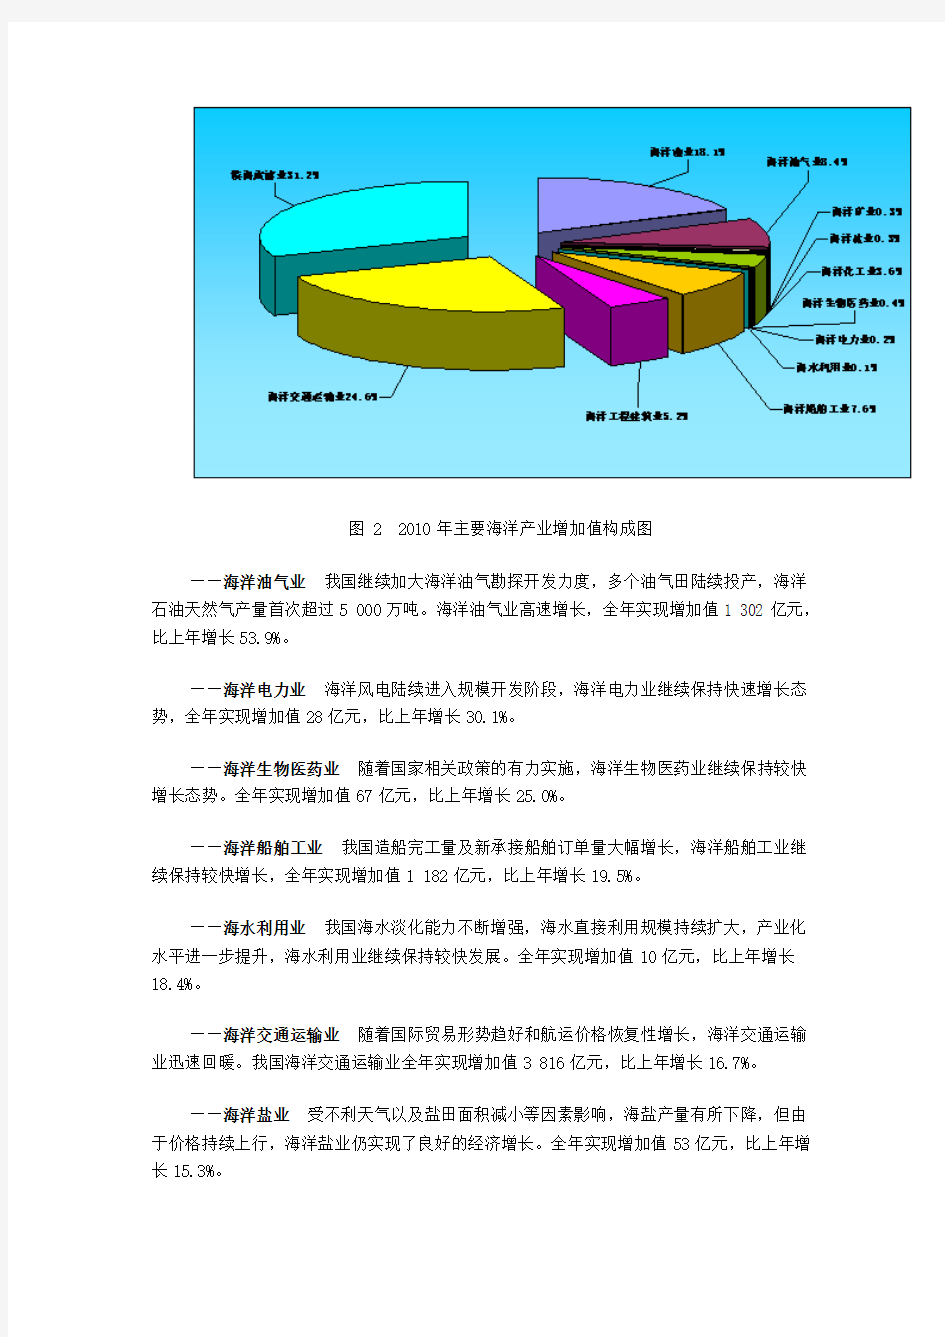 2010年中国海洋经济统计公报